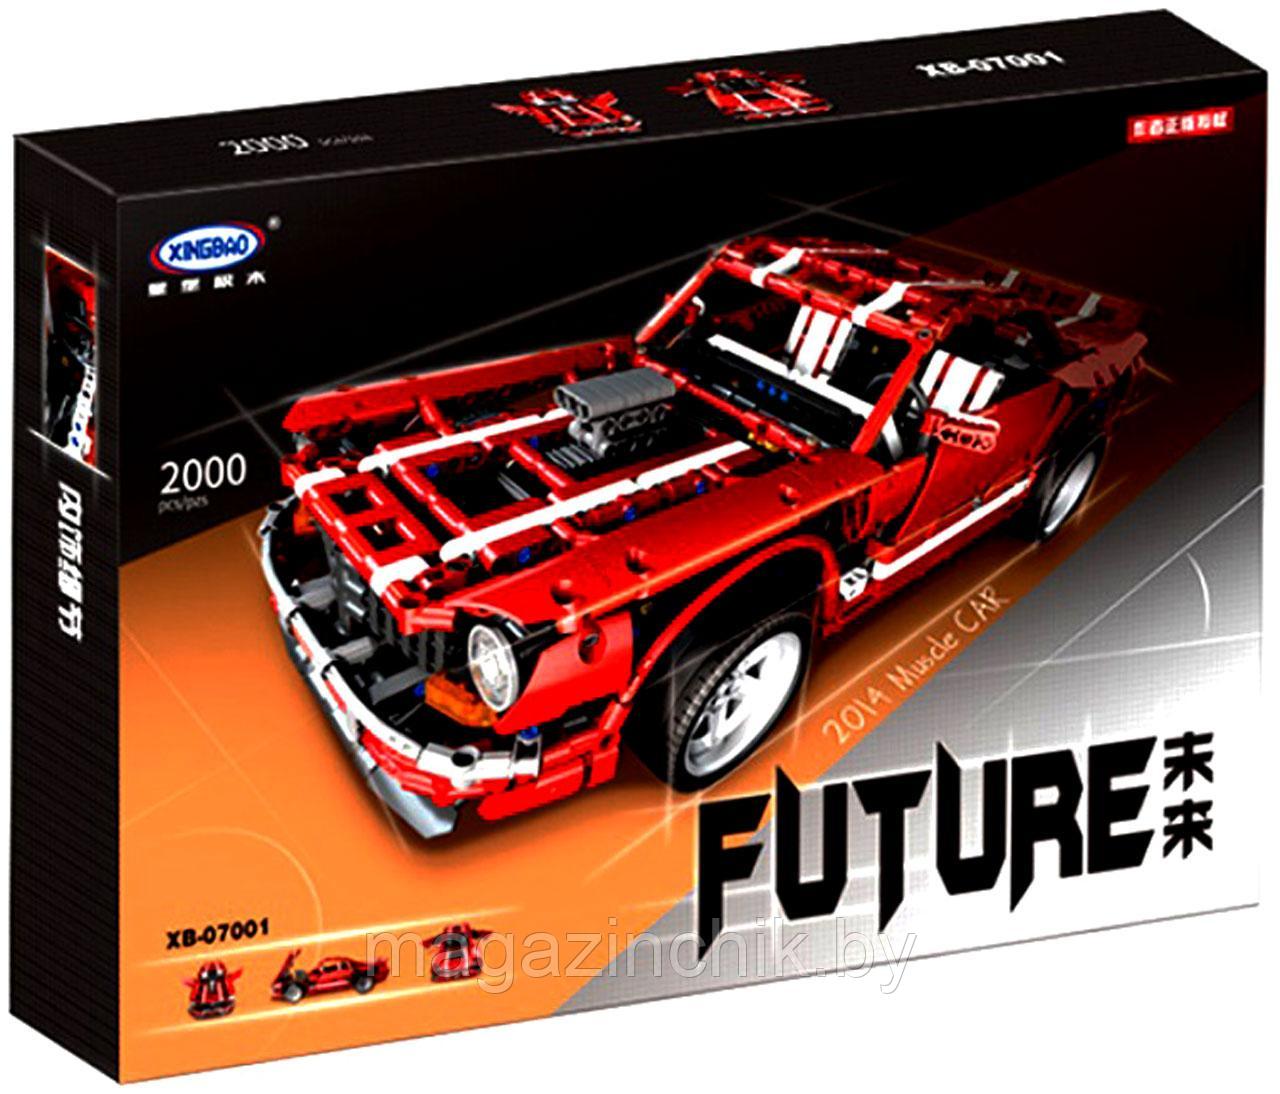 Конструктор Красный Ford Mustang GT XB-07001 2000 дет. аналог Лего Техник